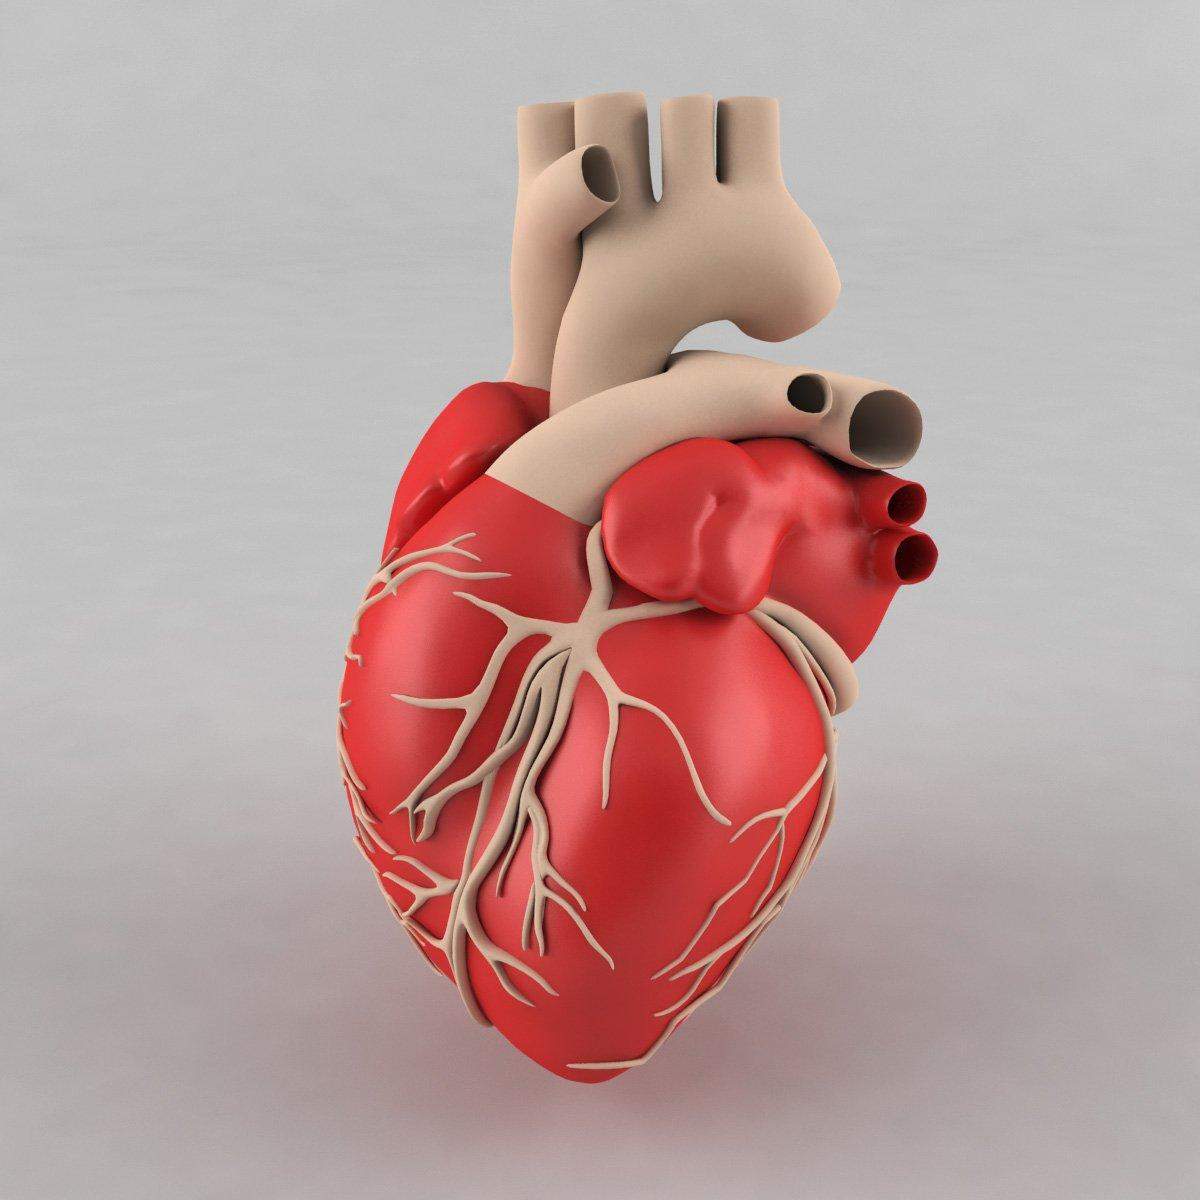 वैज्ञानिकों ने बनाया 3डी दिल,जो देगा मनुष्य को नया जीवन